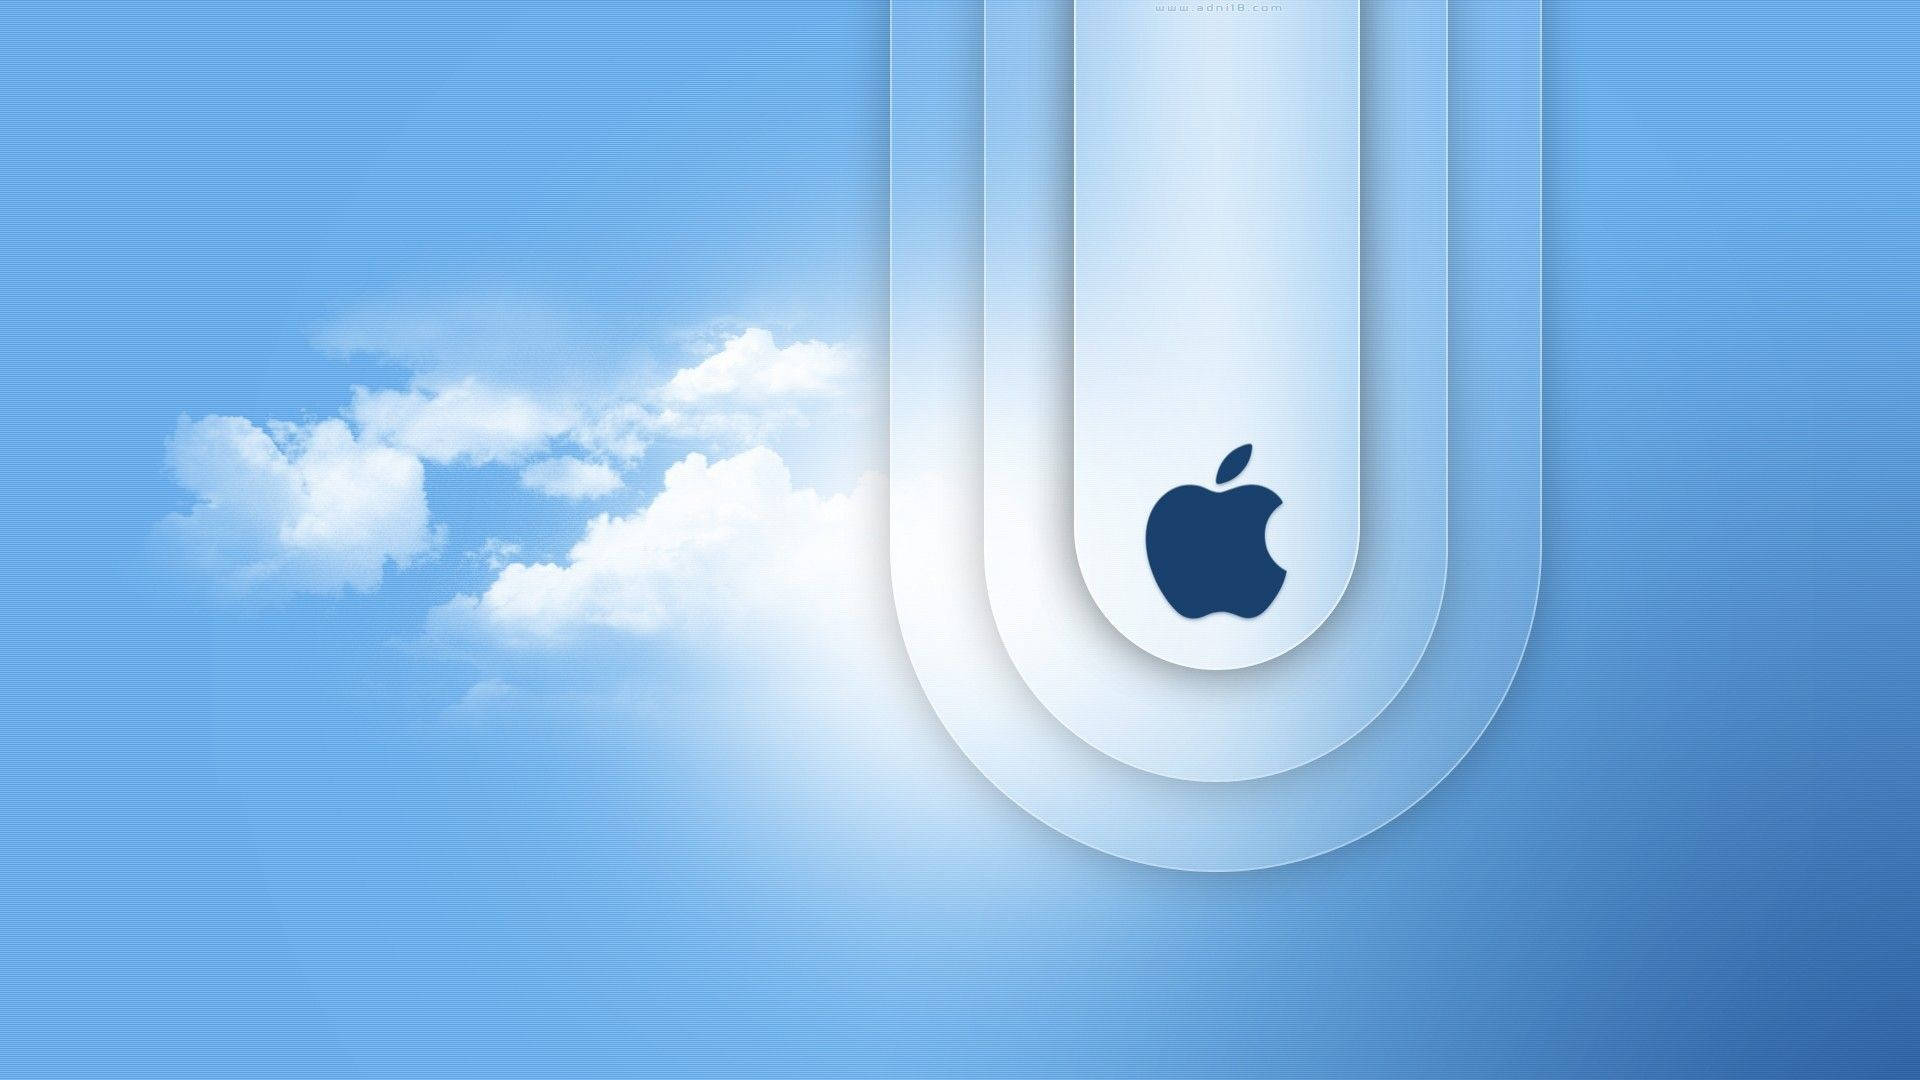 Macbook Air Logo In Clouds Background